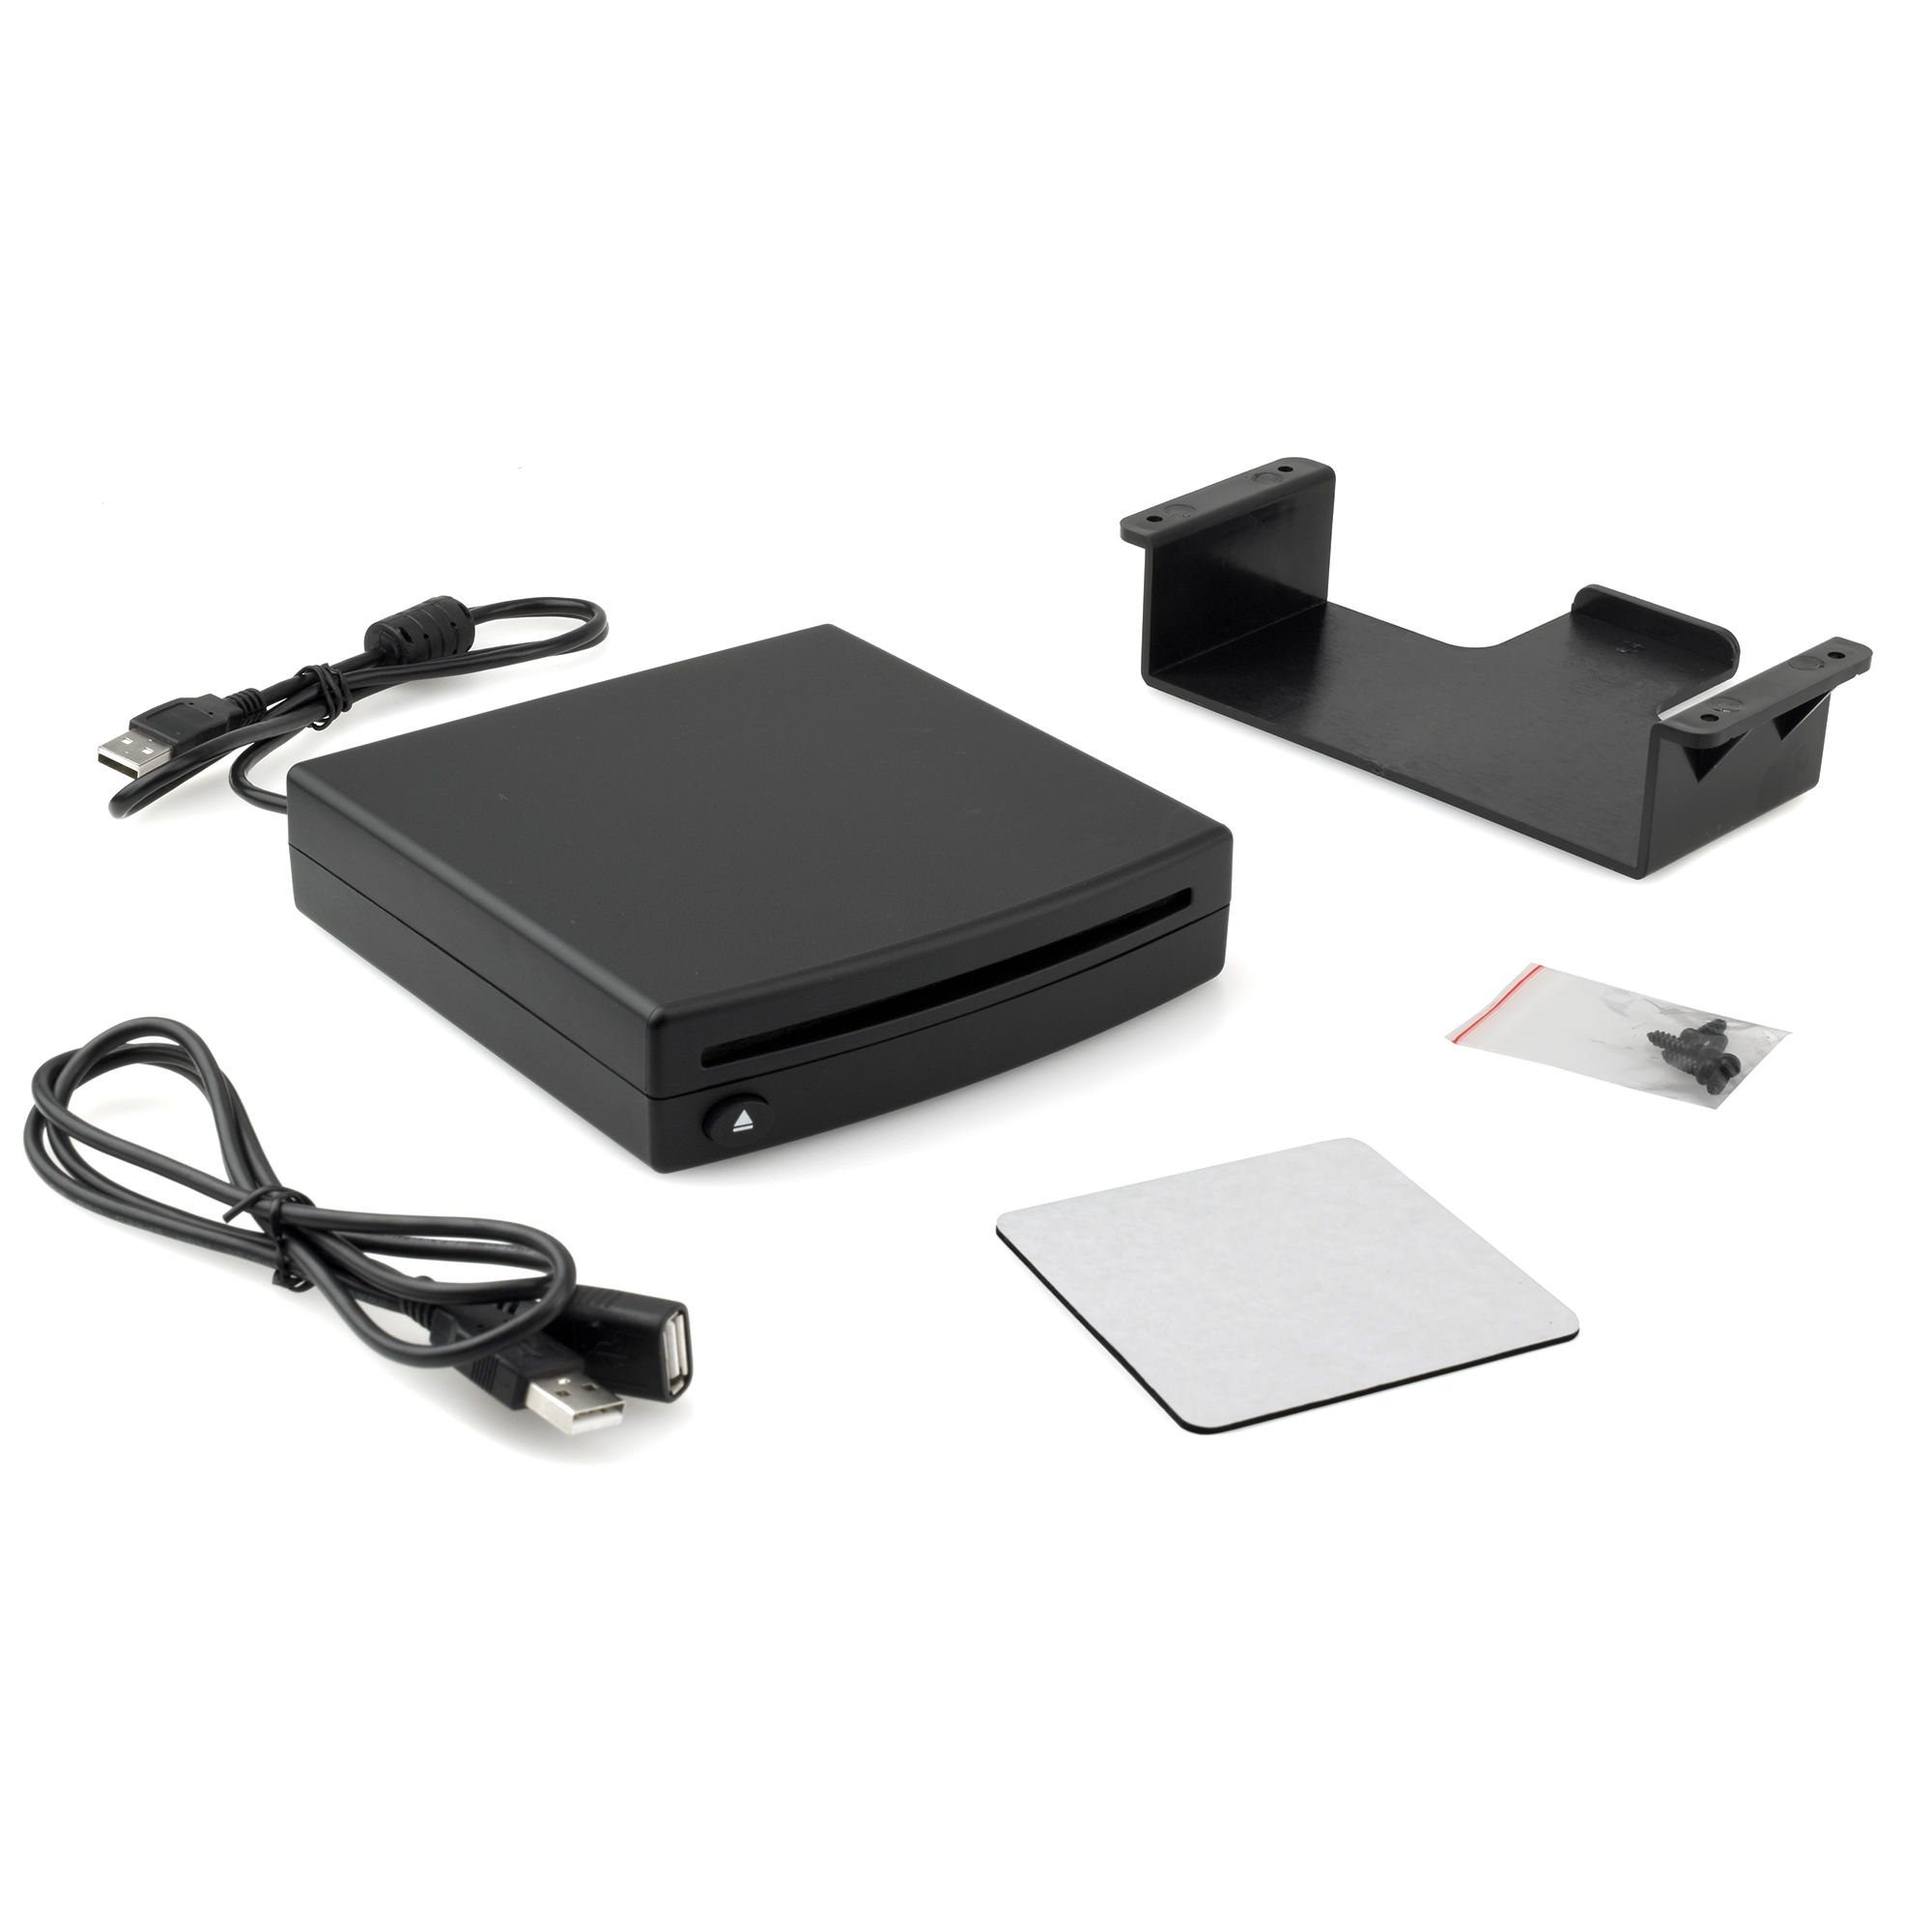 WAV-fähigem maxxcount CD-Player Autoradios CD-Player mit tragbarer Externer für